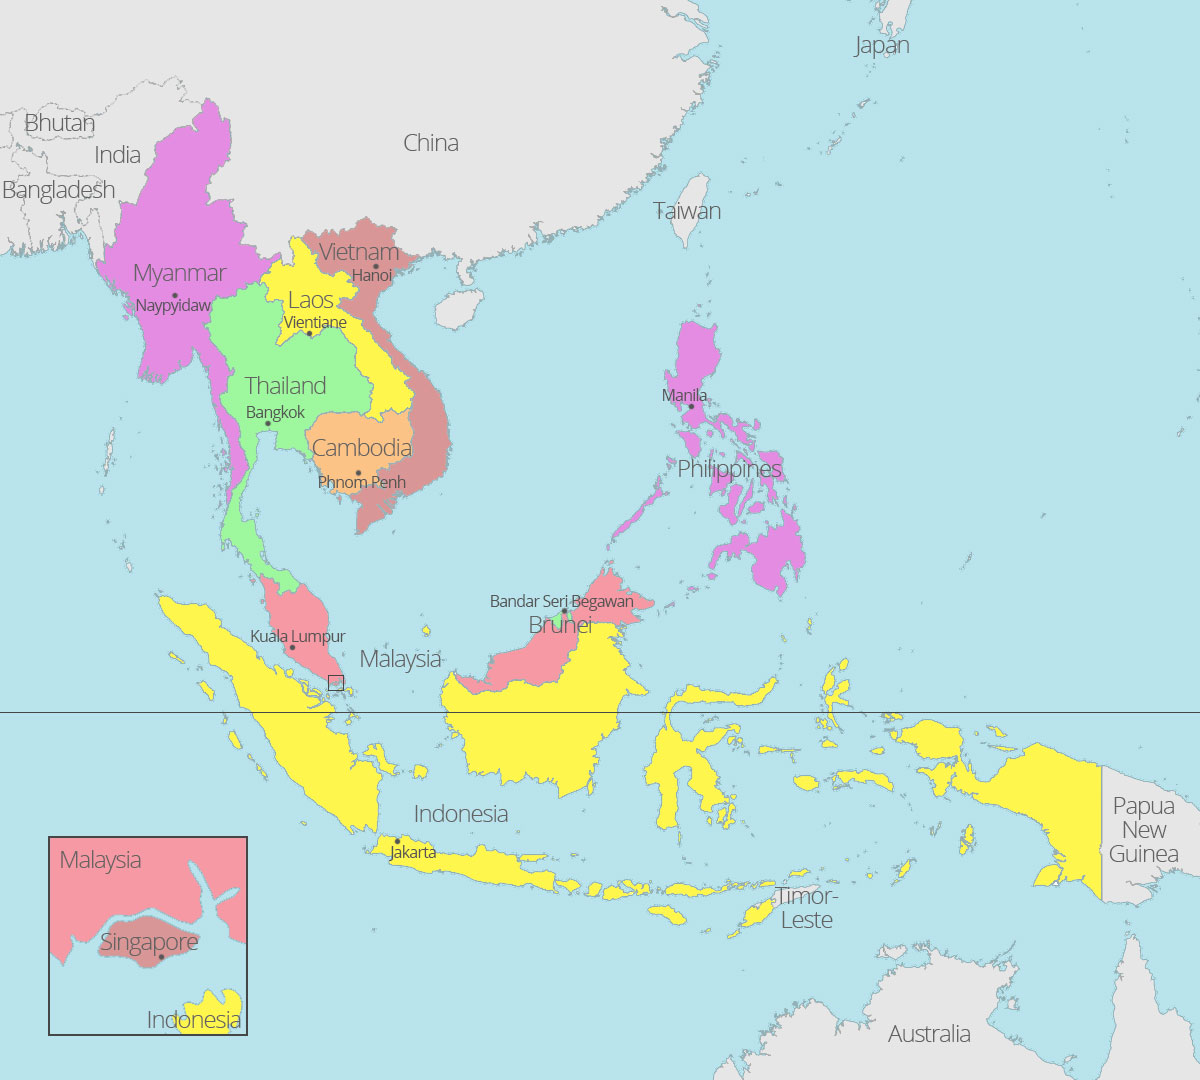 ASEAN-map